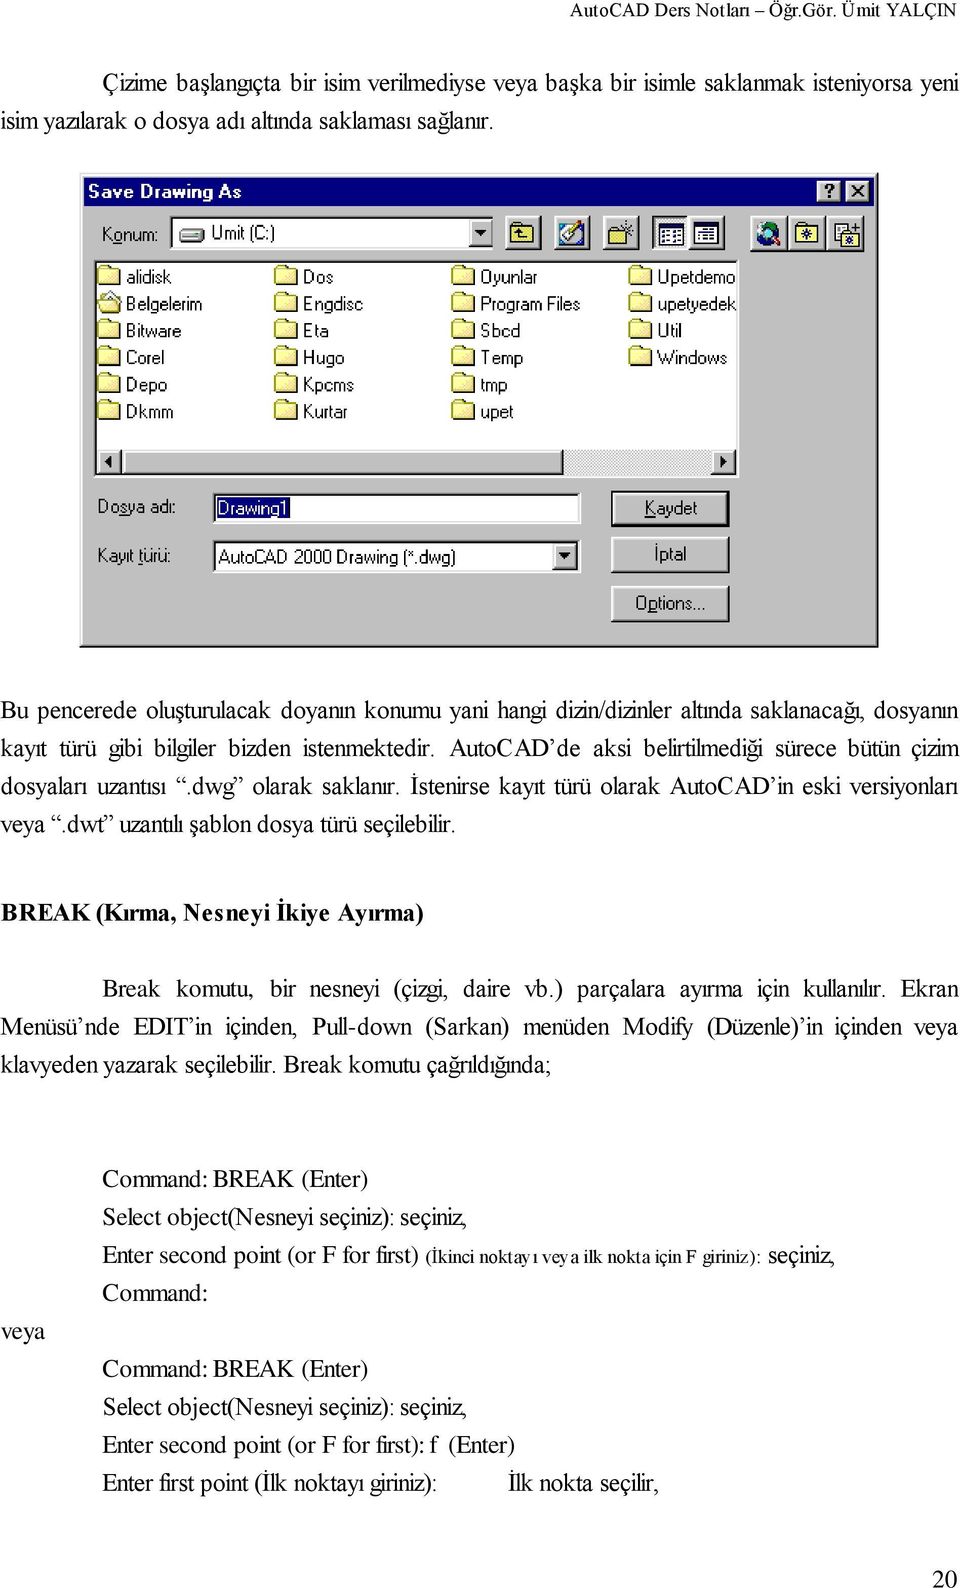 AutoCAD de aksi belirtilmediği sürece bütün çizim dosyaları uzantısı.dwg olarak saklanır. Ġstenirse kayıt türü olarak AutoCAD in eski versiyonları veya.dwt uzantılı Ģablon dosya türü seçilebilir.